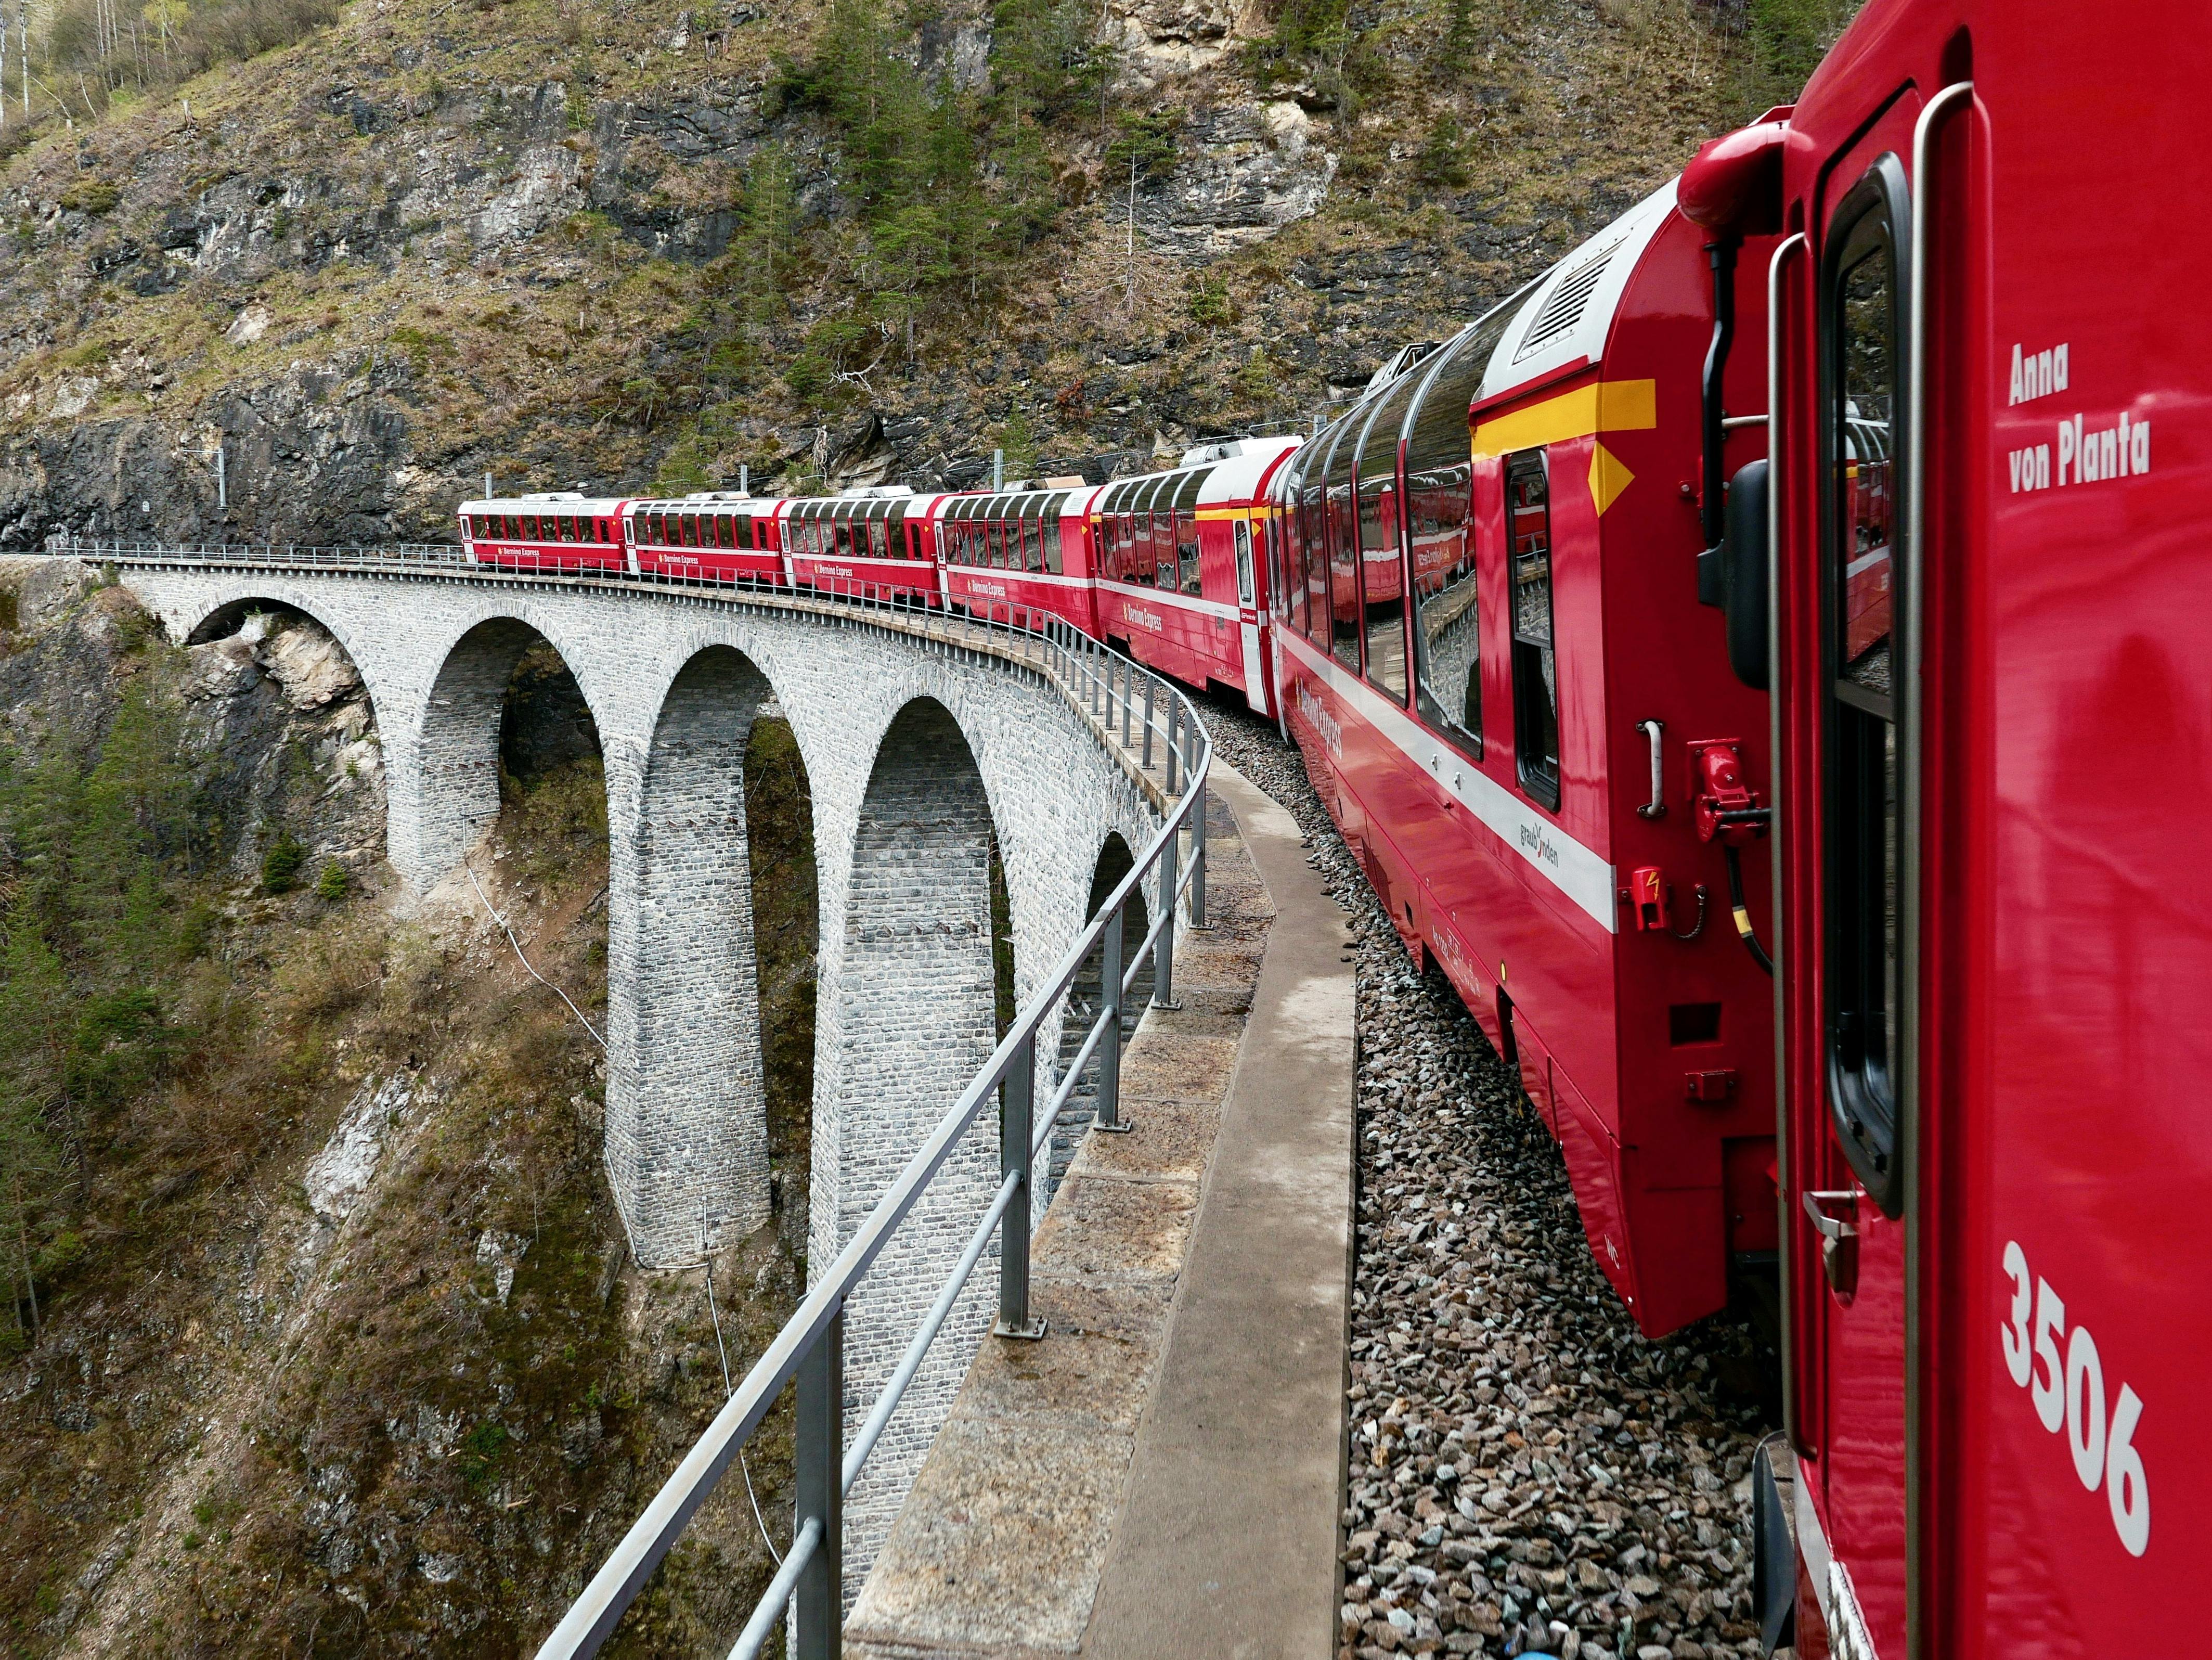 St. Moritz and Bernina Express